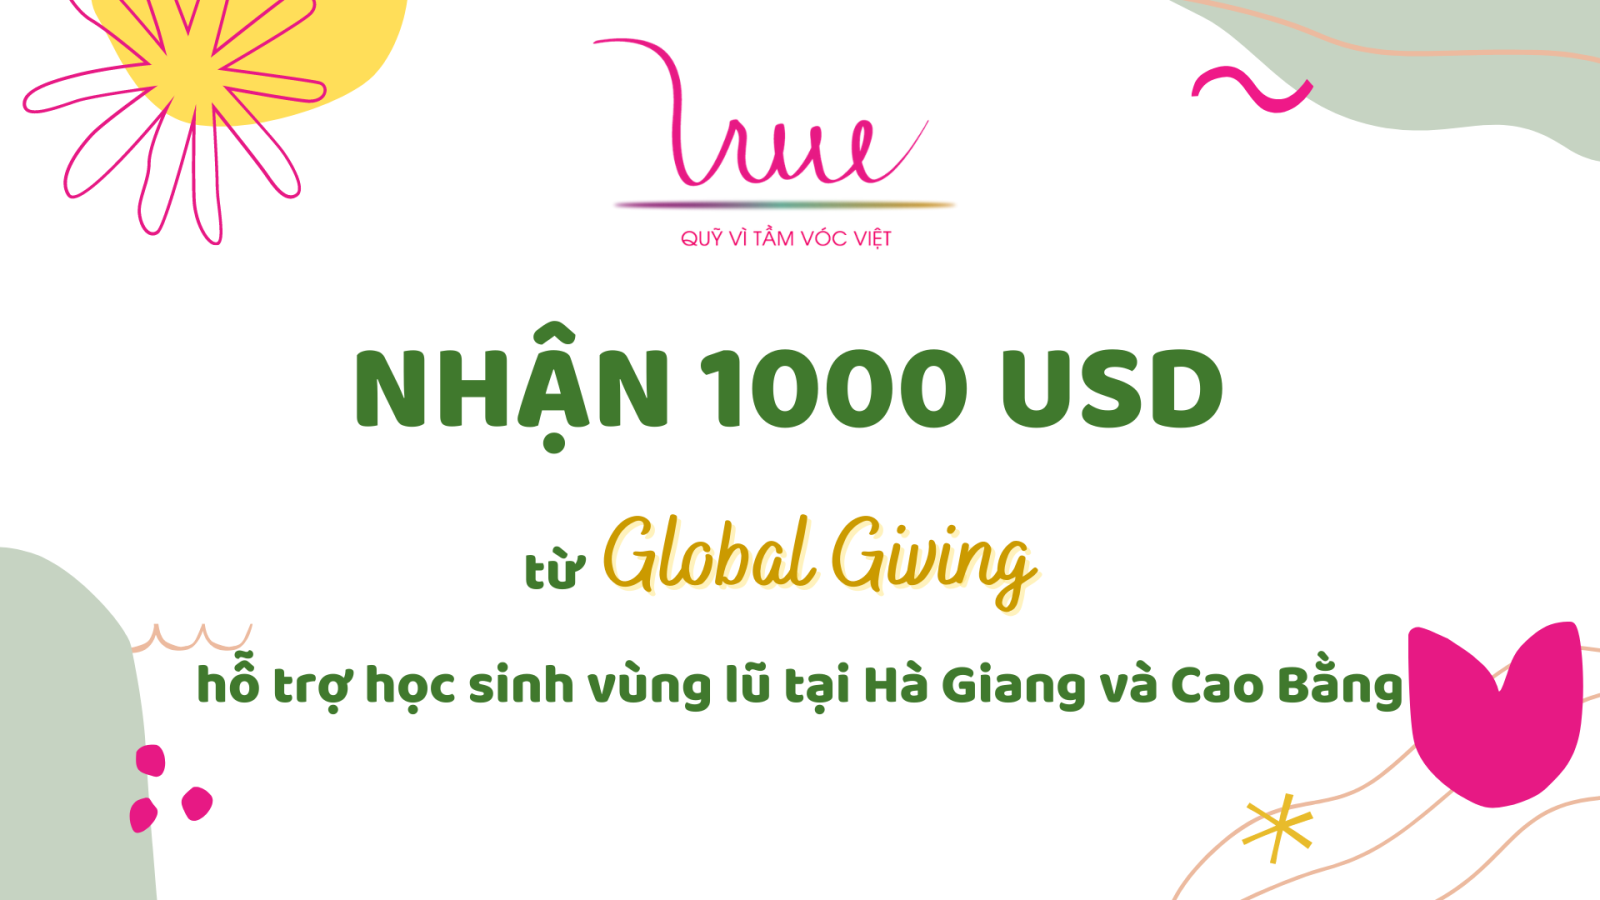 Quỹ Vì Tầm Vóc Việt nhận tài trợ 1000 USD từ Global Giving hỗ trợ học sinh vùng lũ Hà Giang và Cao Bằng 